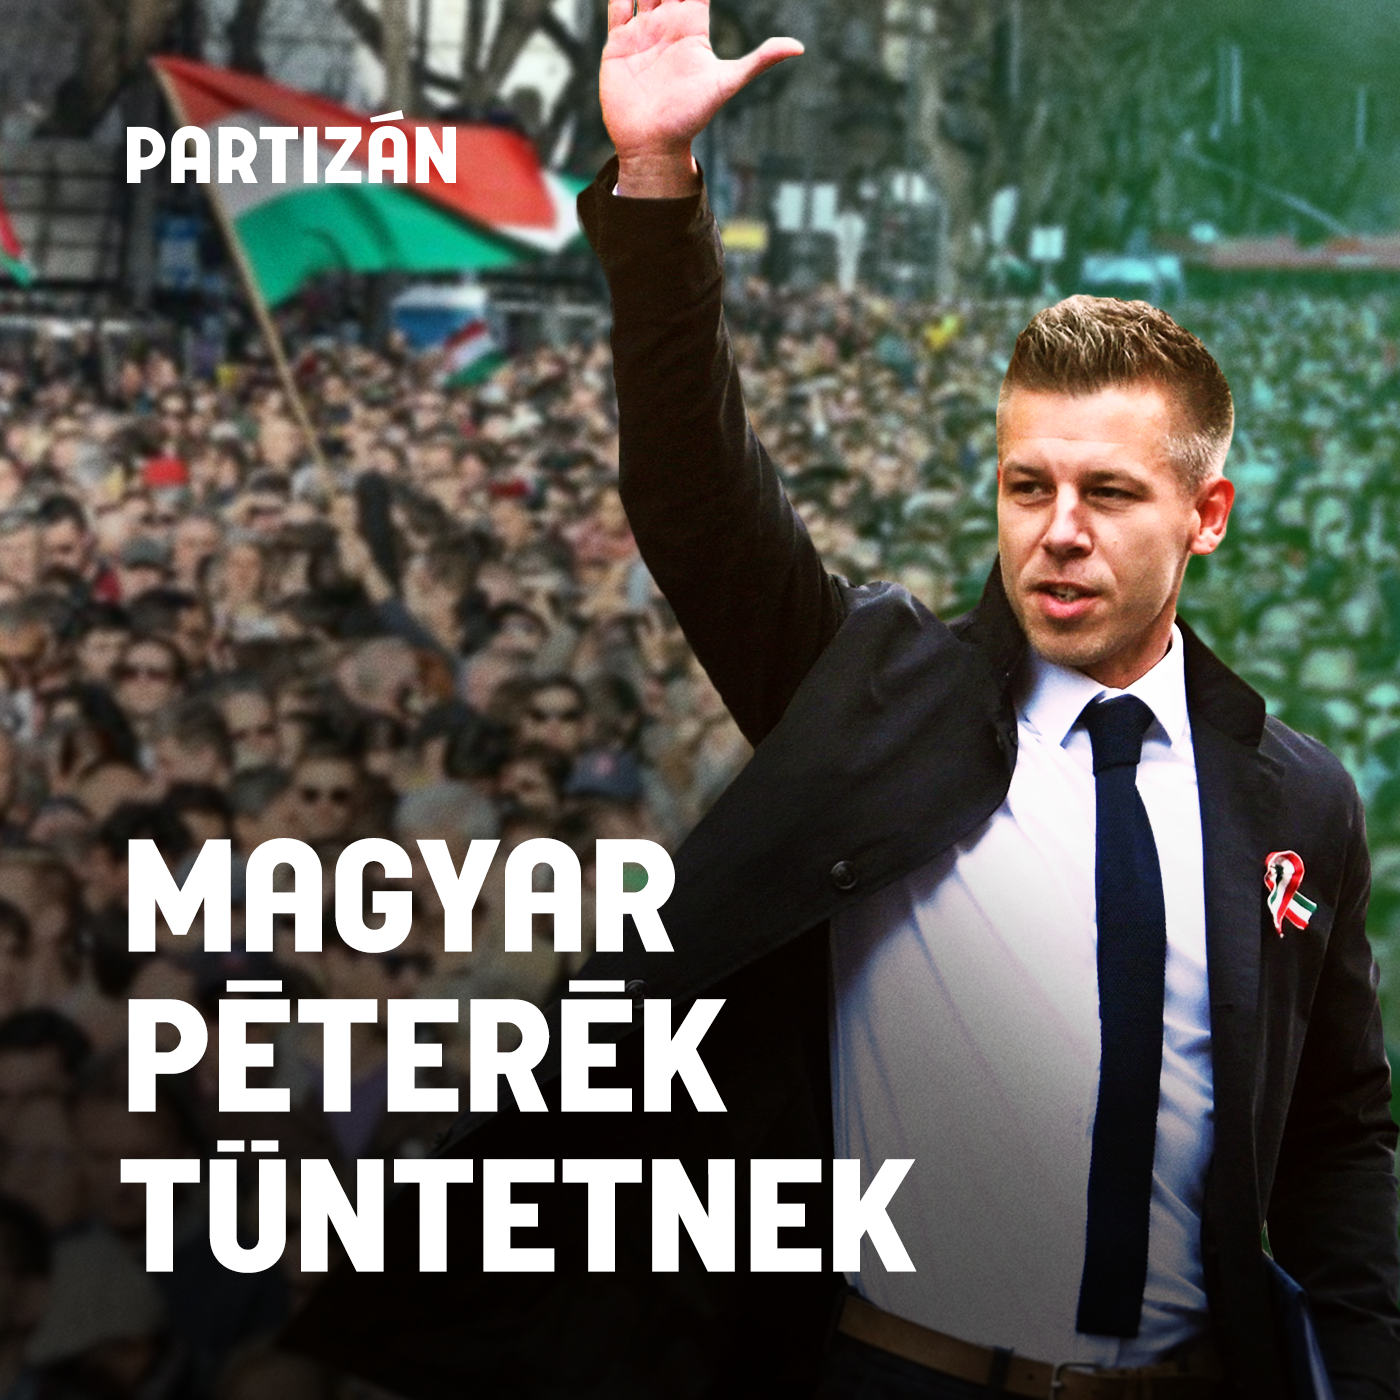 Magyar Péterék a kormány lemondását követelik | Élő közvetítés a tüntetésről